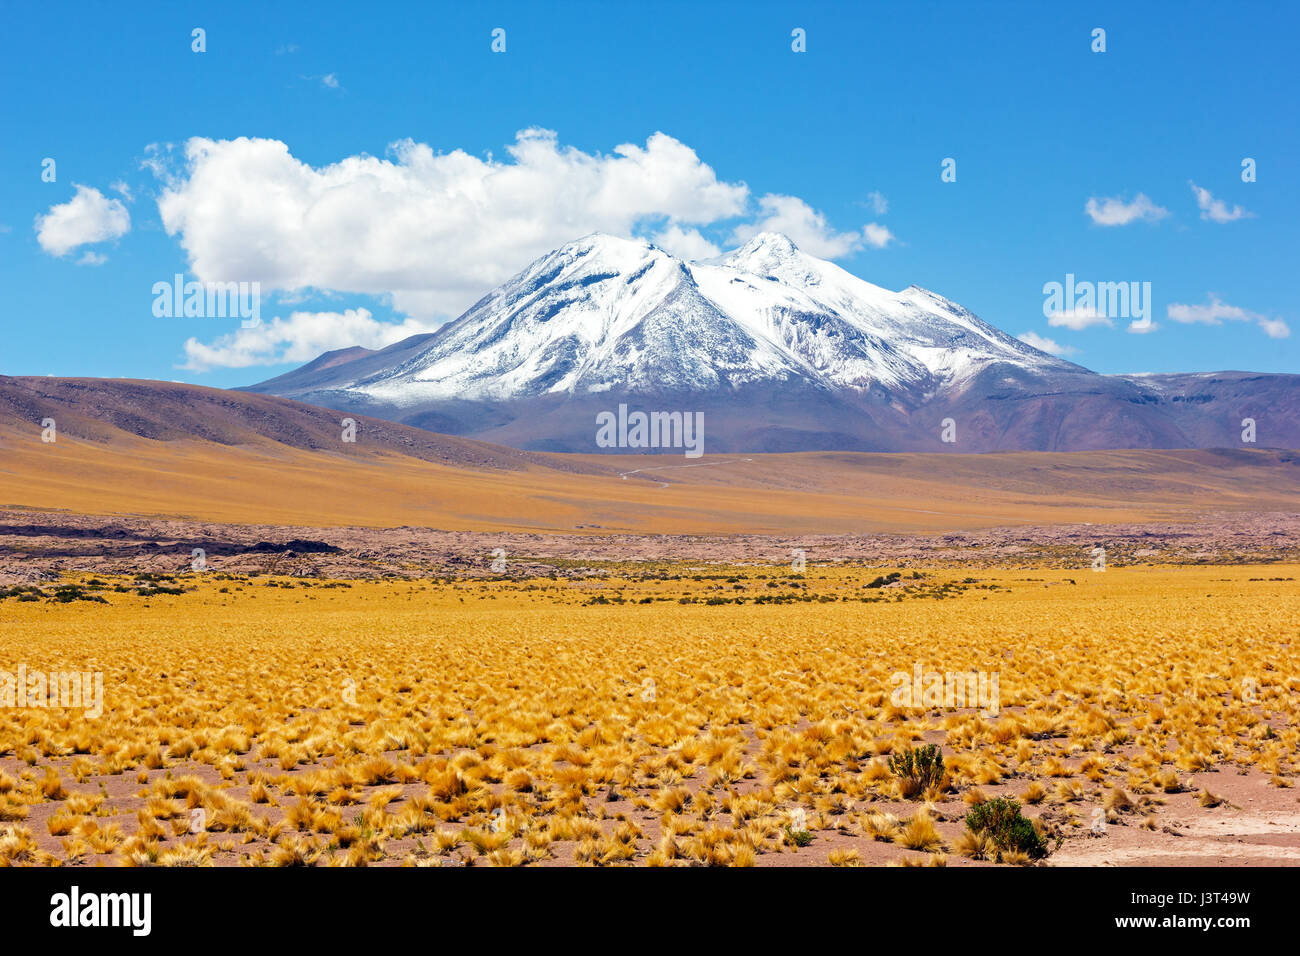 Pic de neige montagnes dans le désert, San Pedro de Atacama, Chili, Amérique du Sud. Puna grassland dans l'Altiplano chilien désert. Banque D'Images